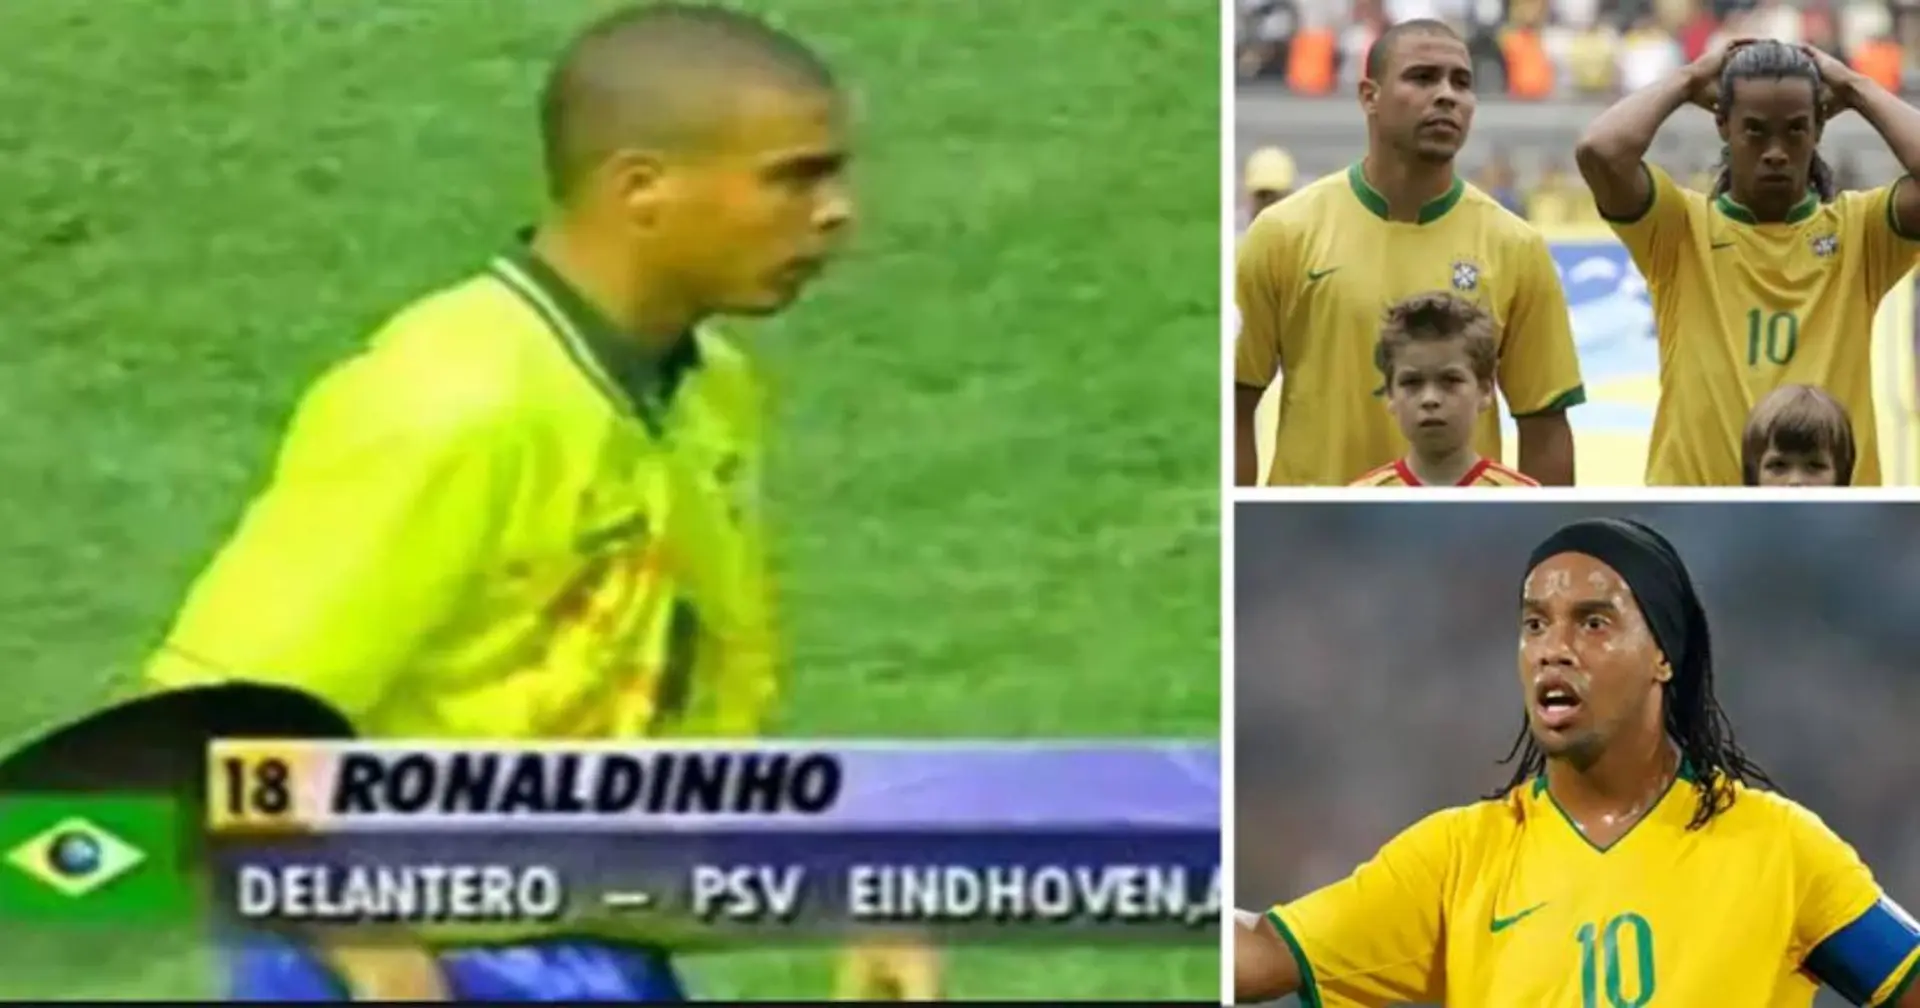 Ronaldo también fue llamado Ronaldinho – todo a causa de que había otro Ronaldo en la 'canarinha'